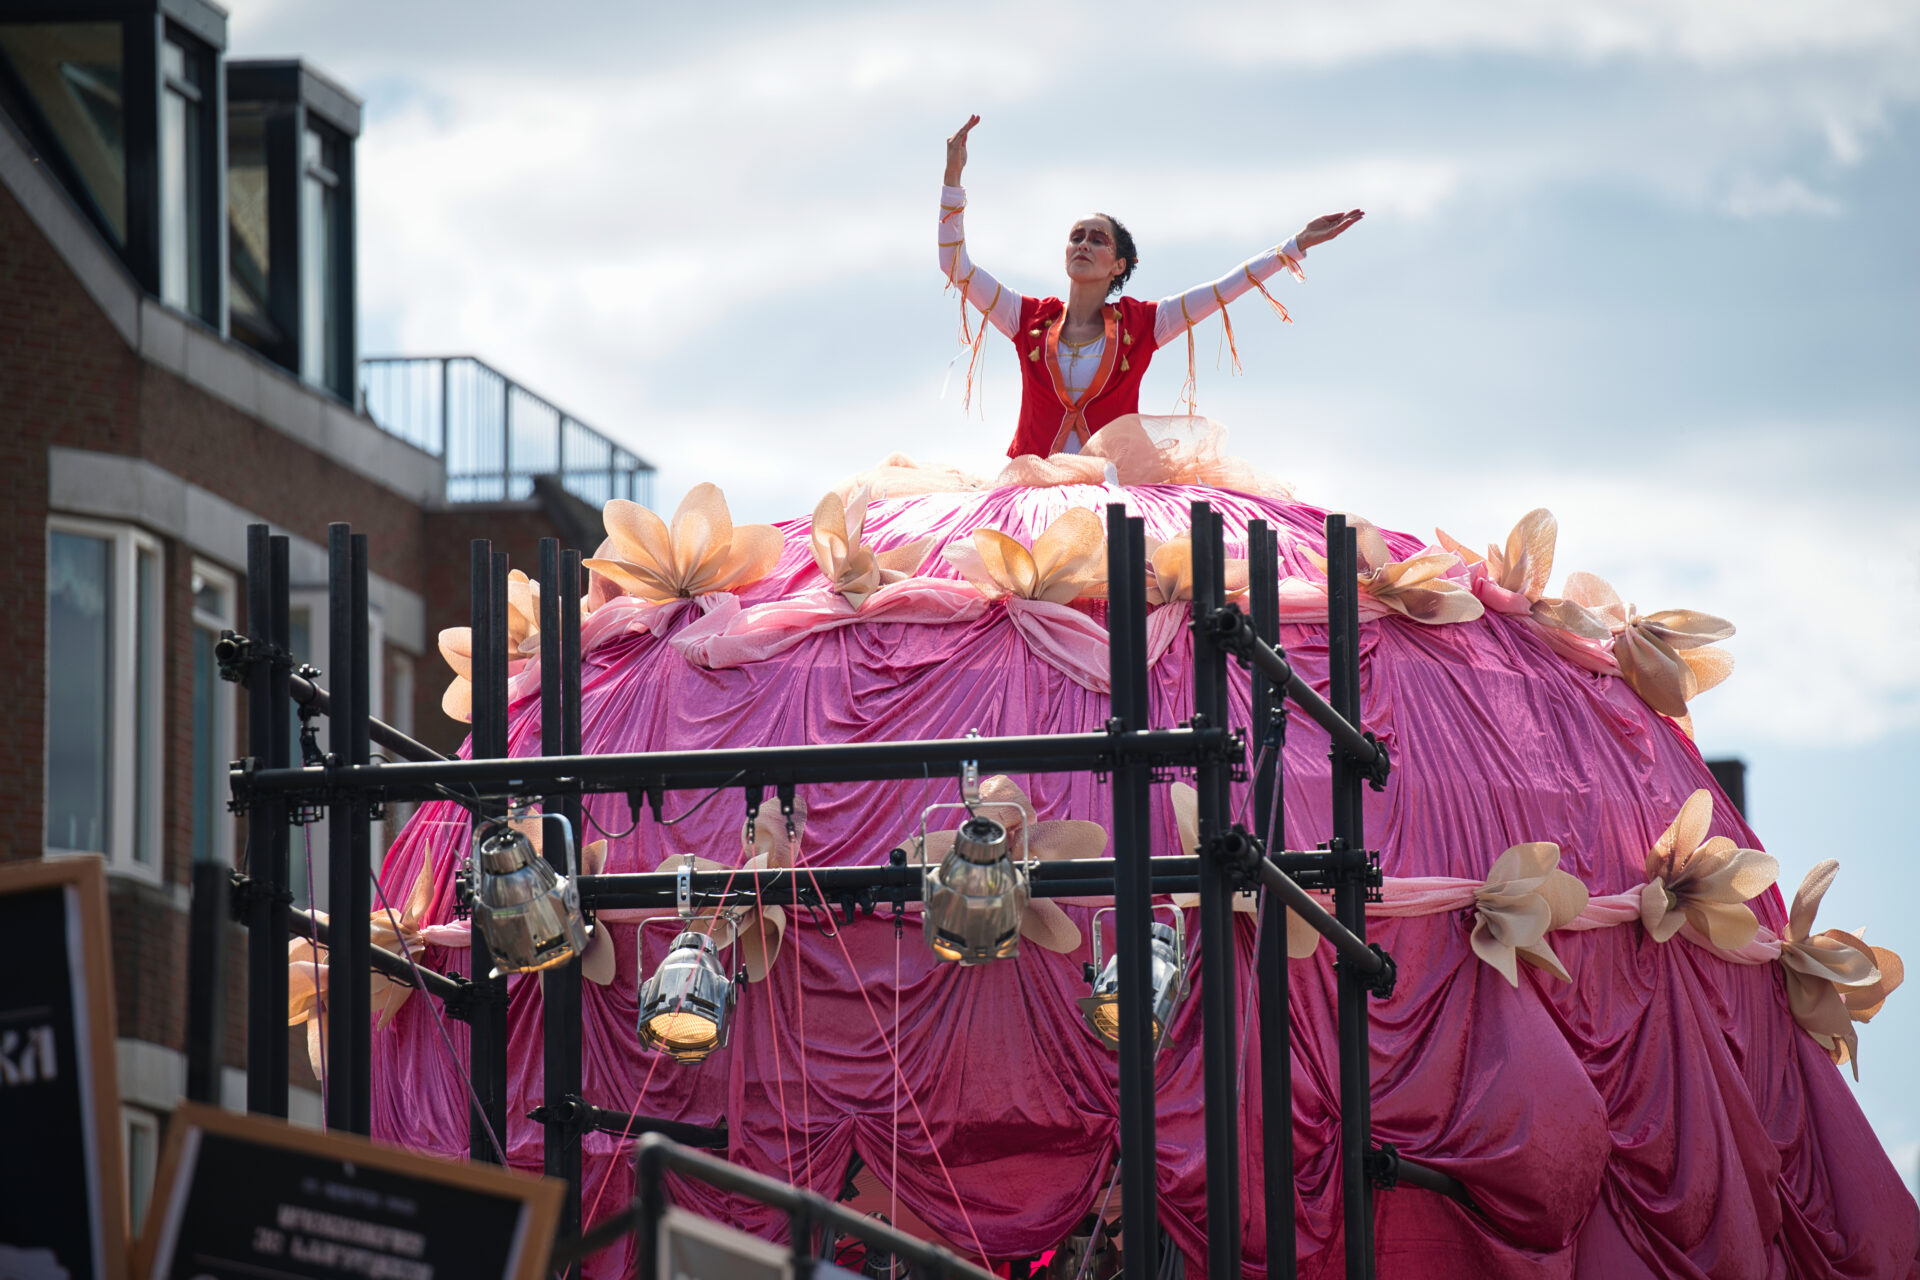 brabantsedag Heeze Circus dance pink high dress